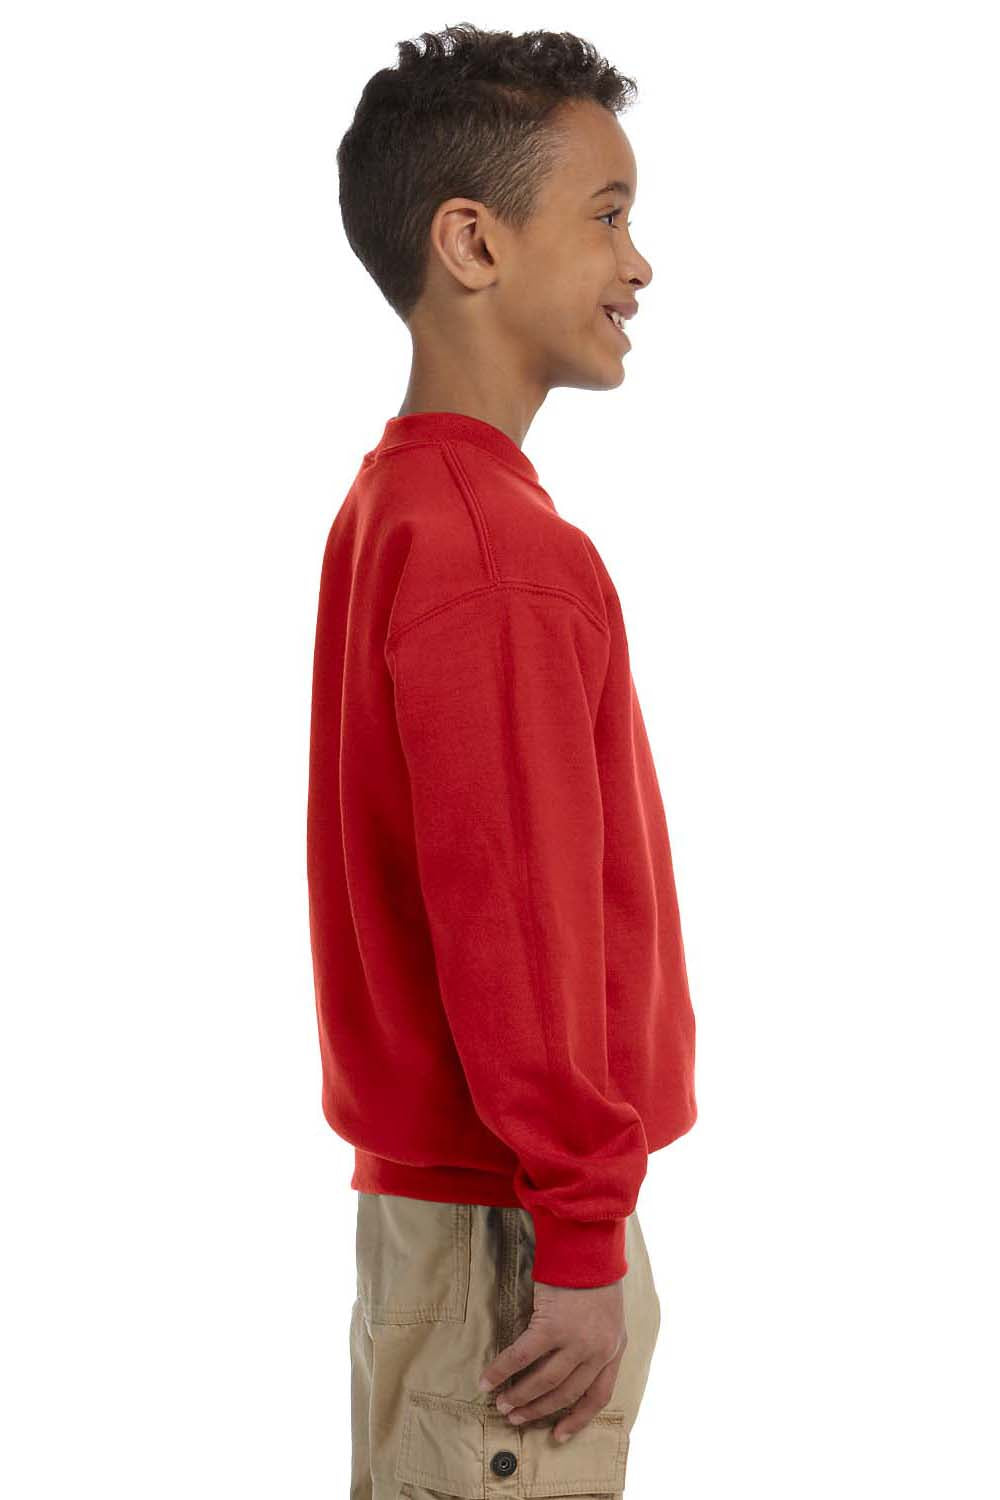 Gildan G180B Youth Fleece Crewneck Sweatshirt Red Side